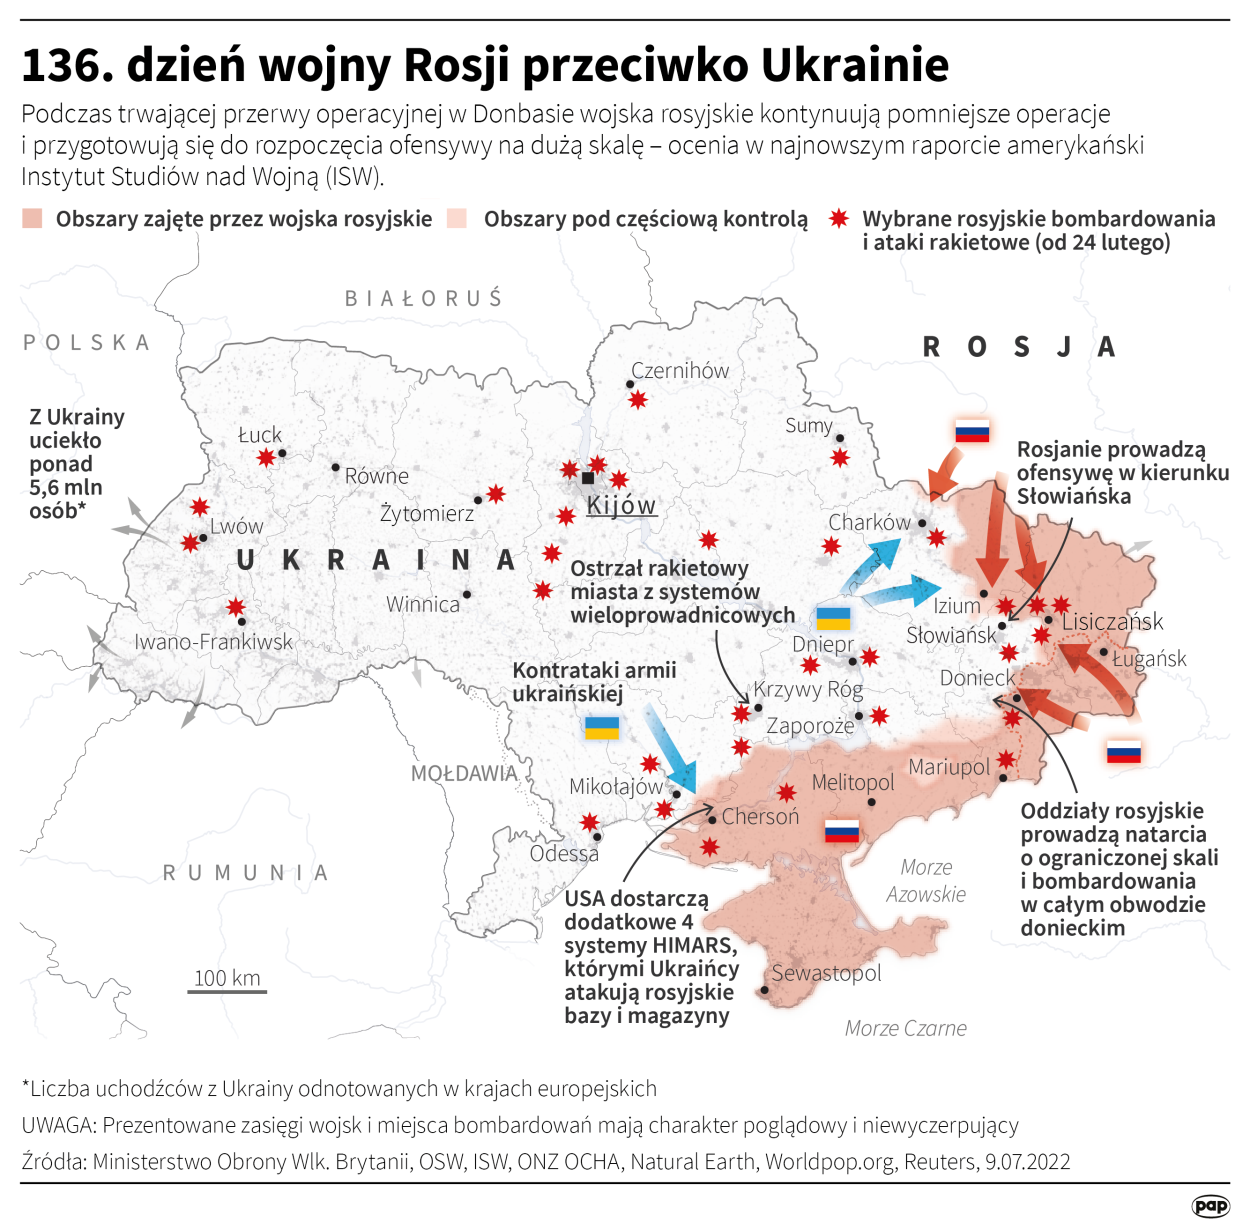 136. dzień wojny Rosji przeciwko Ukrainie, Autor: Maciej Zieliński 